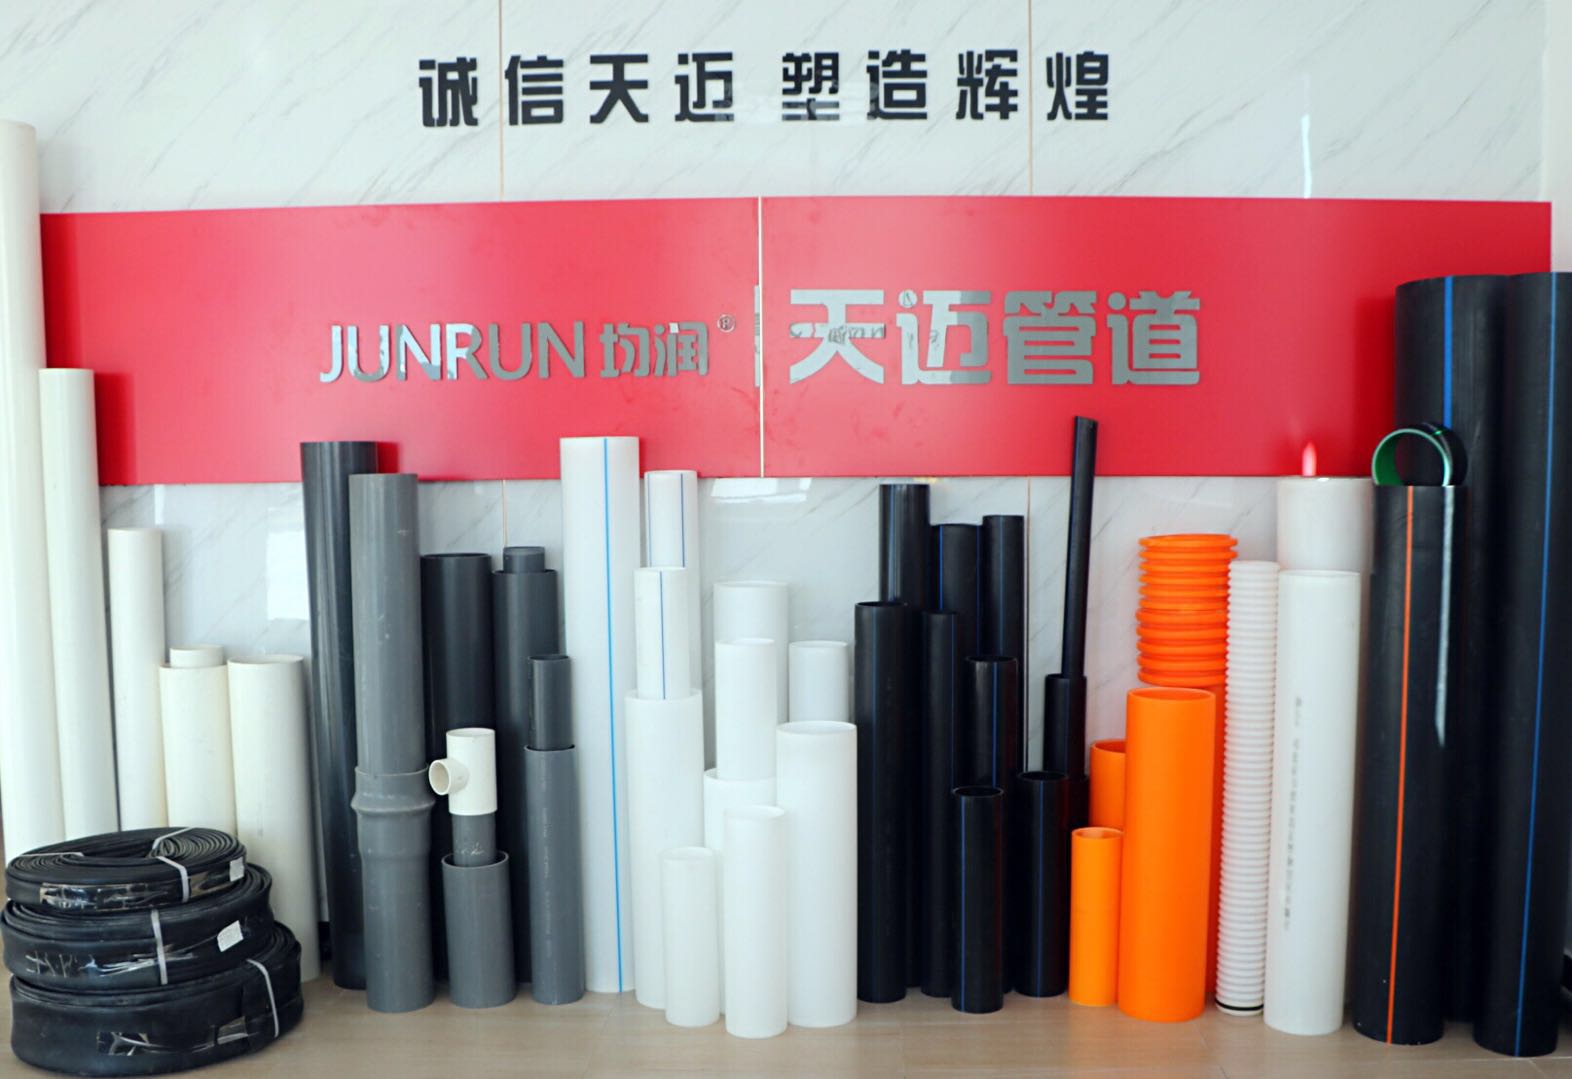 辽宁朝阳塑料管 朝阳塑料管生产厂家 HDPE给水管材批发 朝阳pe管价格